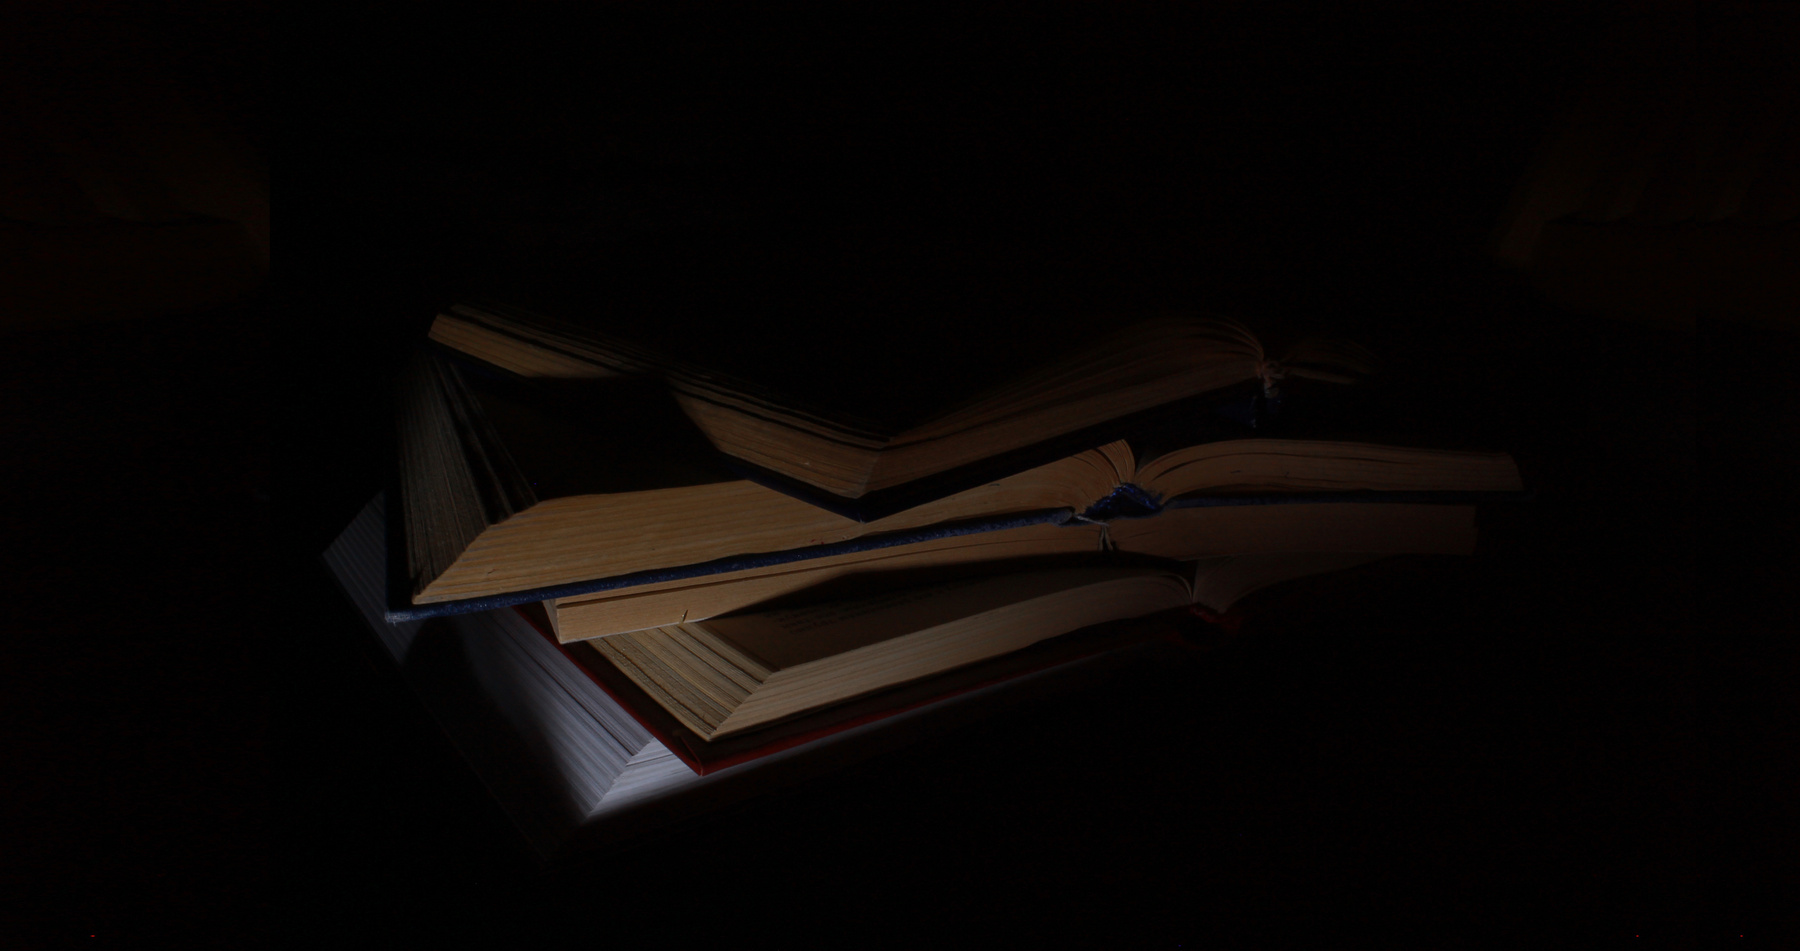 Знания таятся где-то в окружающей тьме неведения книги знания темный ключ